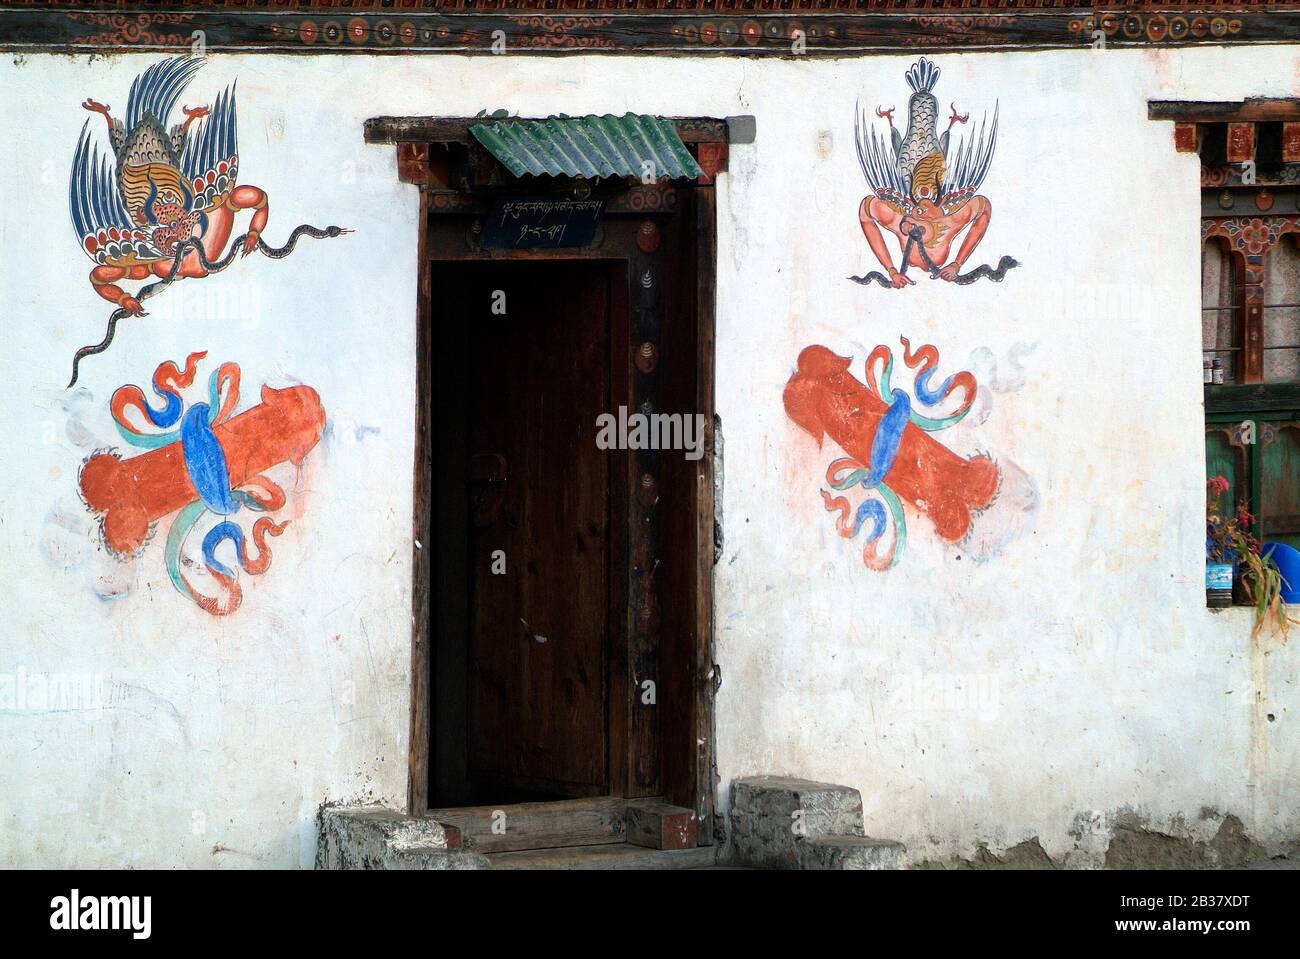 Bután, Paro , casa decorada con símbolos de falo llamados Lingam, un símbolo de fertilidad Foto de stock